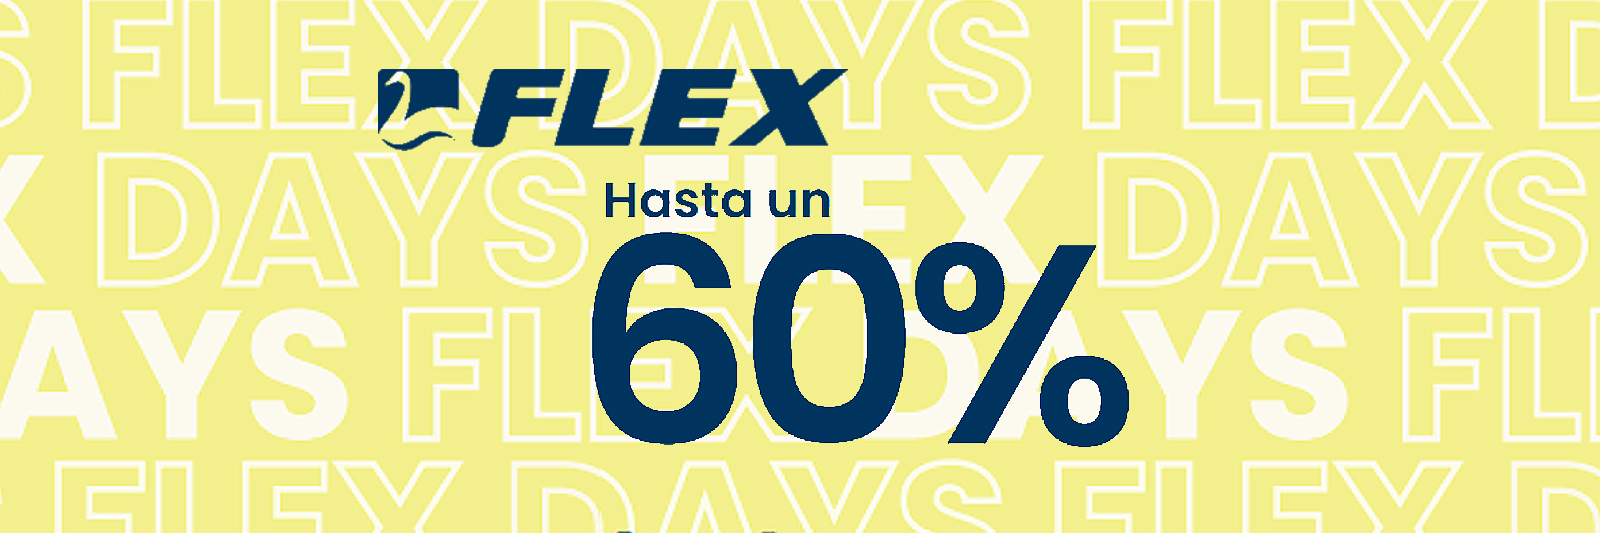 FLEX DAYS